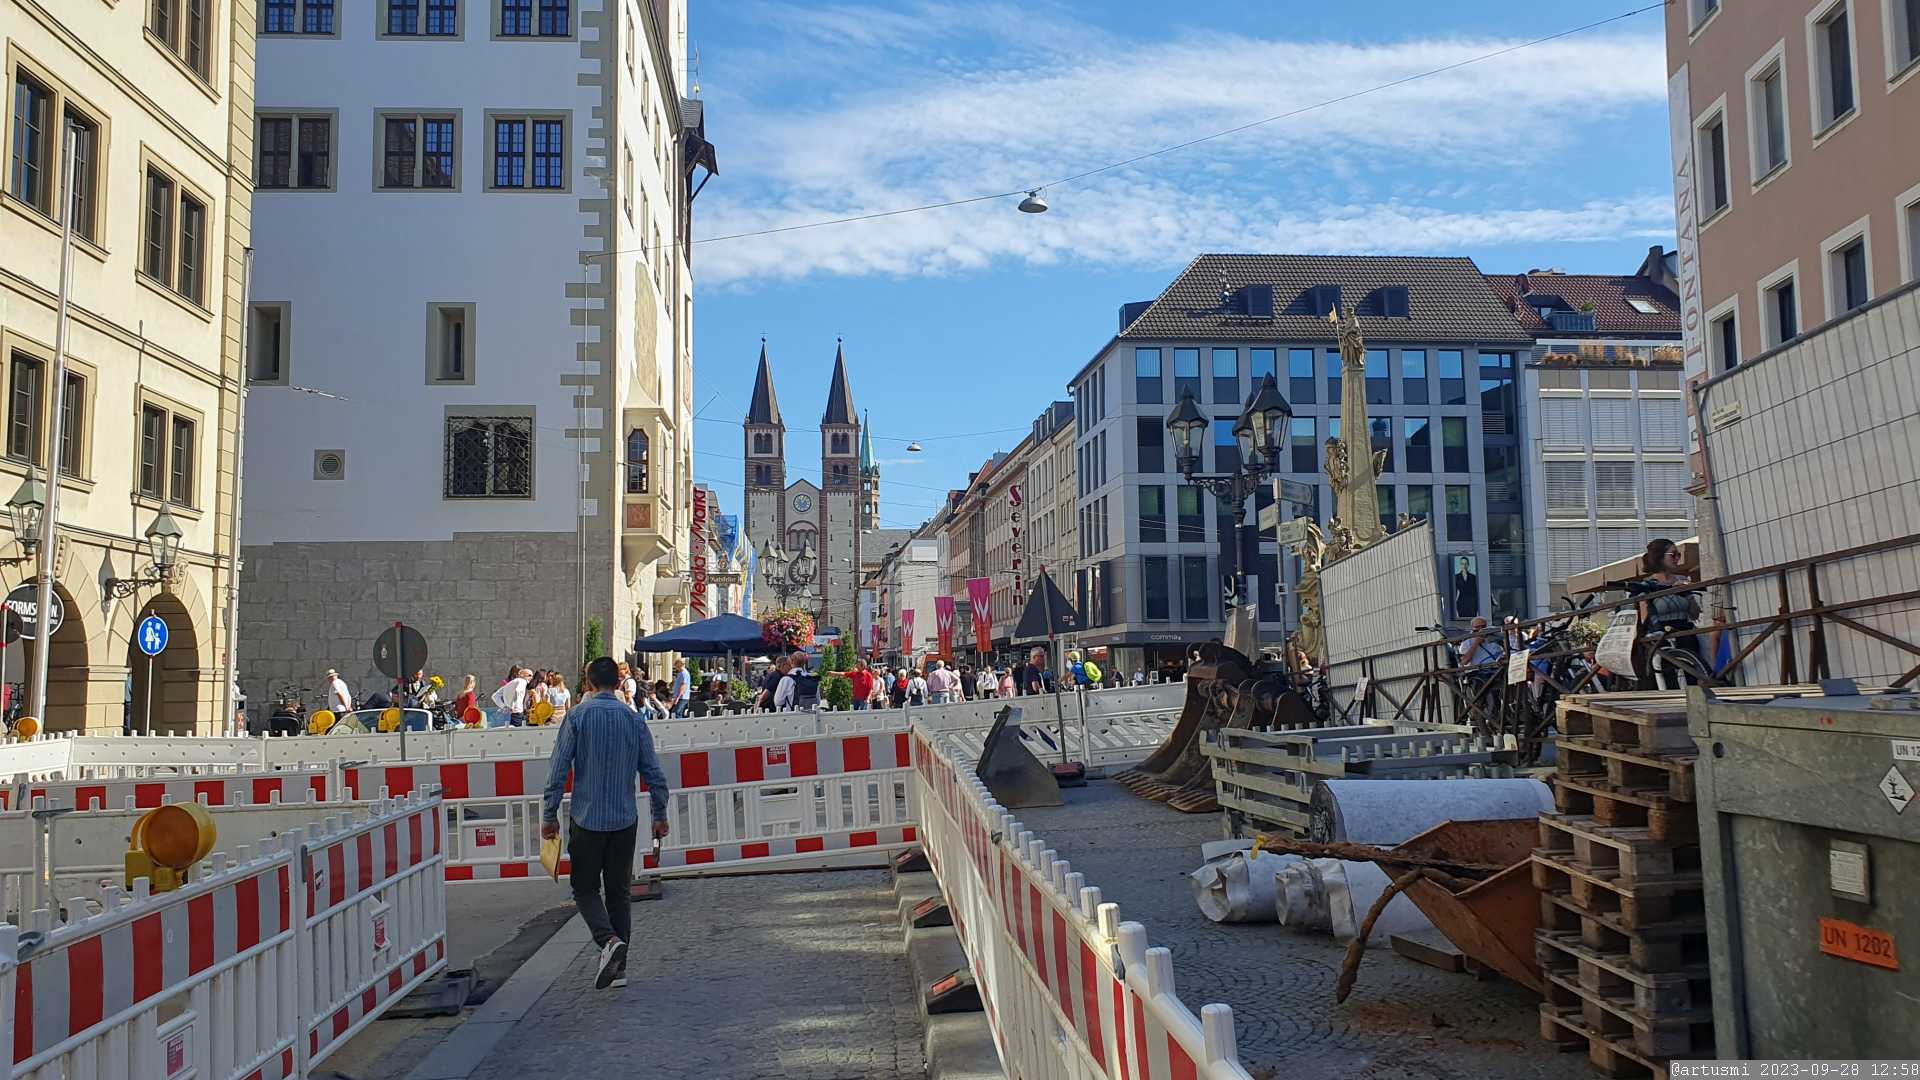 Umbaumaßnahme in Würzburg im Bereich Grafeneckart